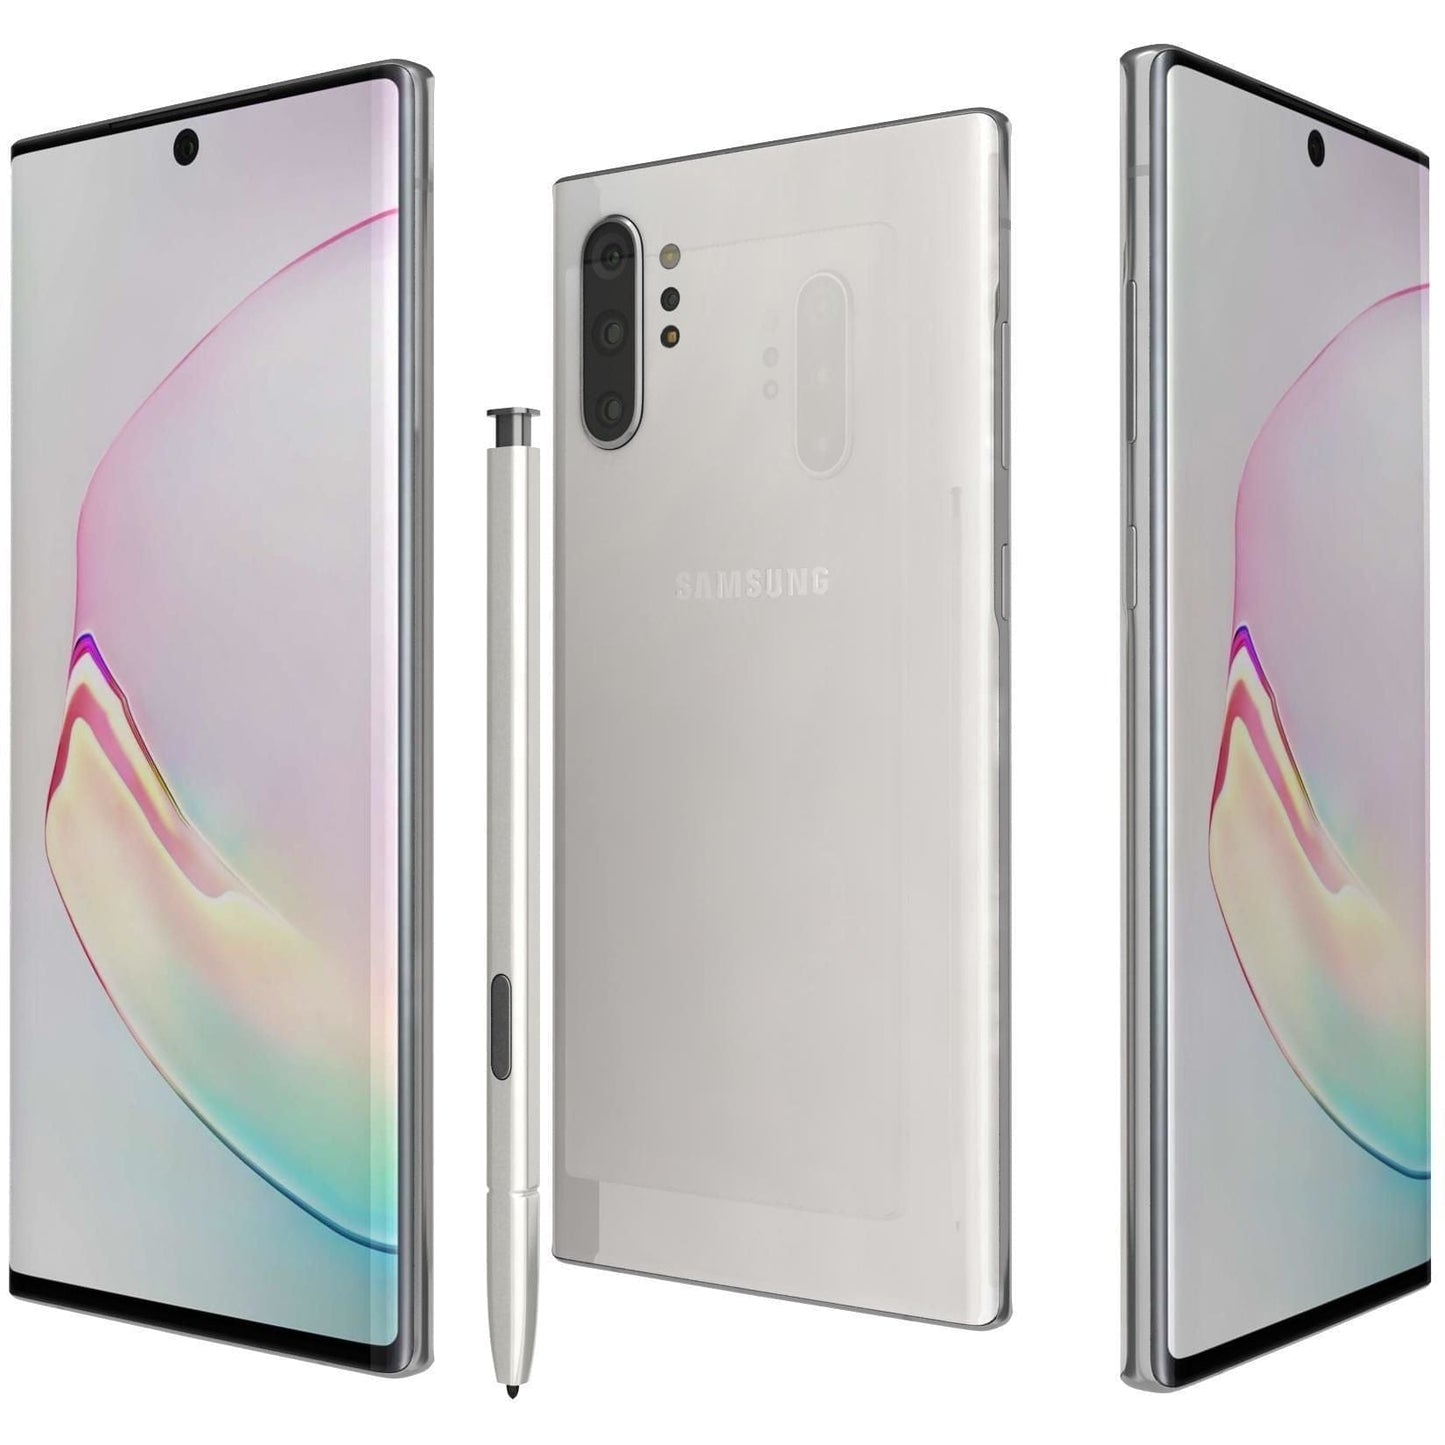 Samsung Galaxy Note10 - Aura White - Unlocked